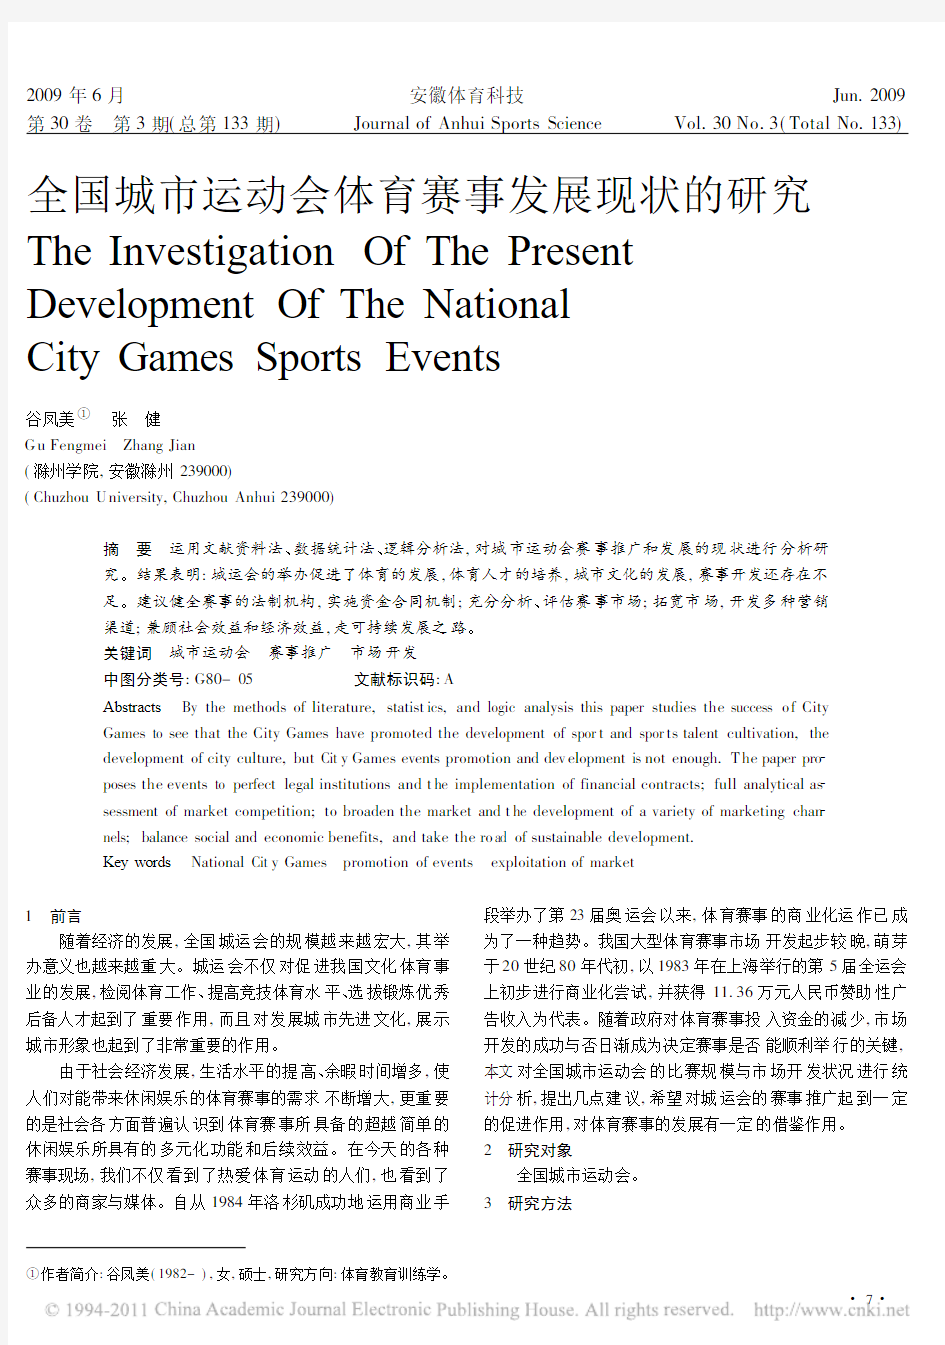 全国城市运动会体育赛事发展现状的研究